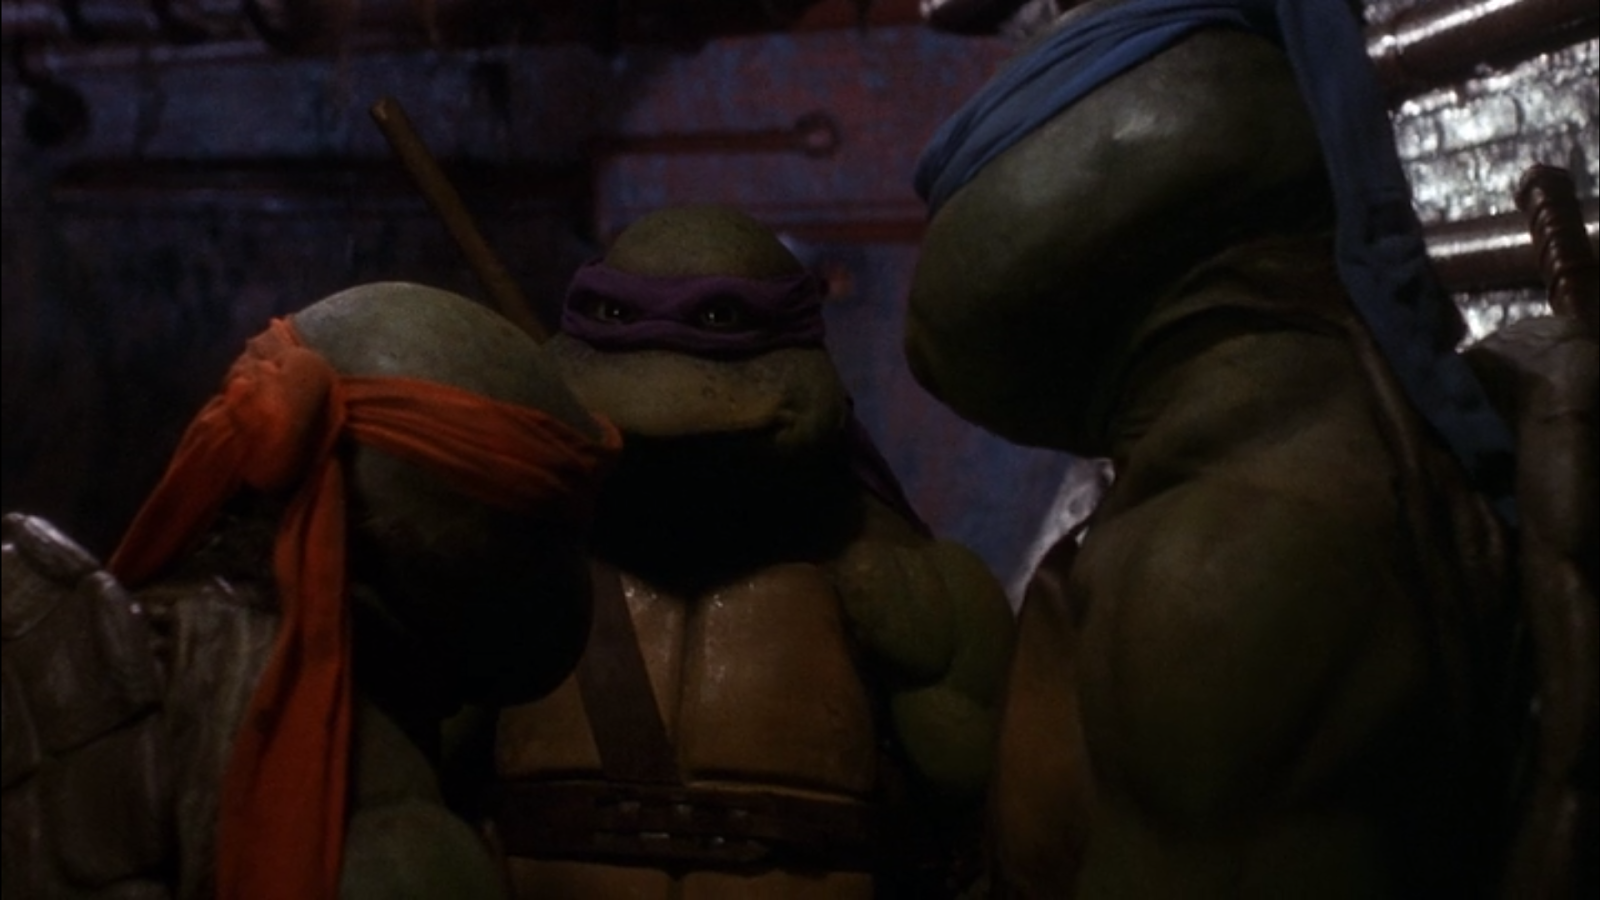 Teenage Mutant Ninja Turtles (2014 film) - Wikipedia